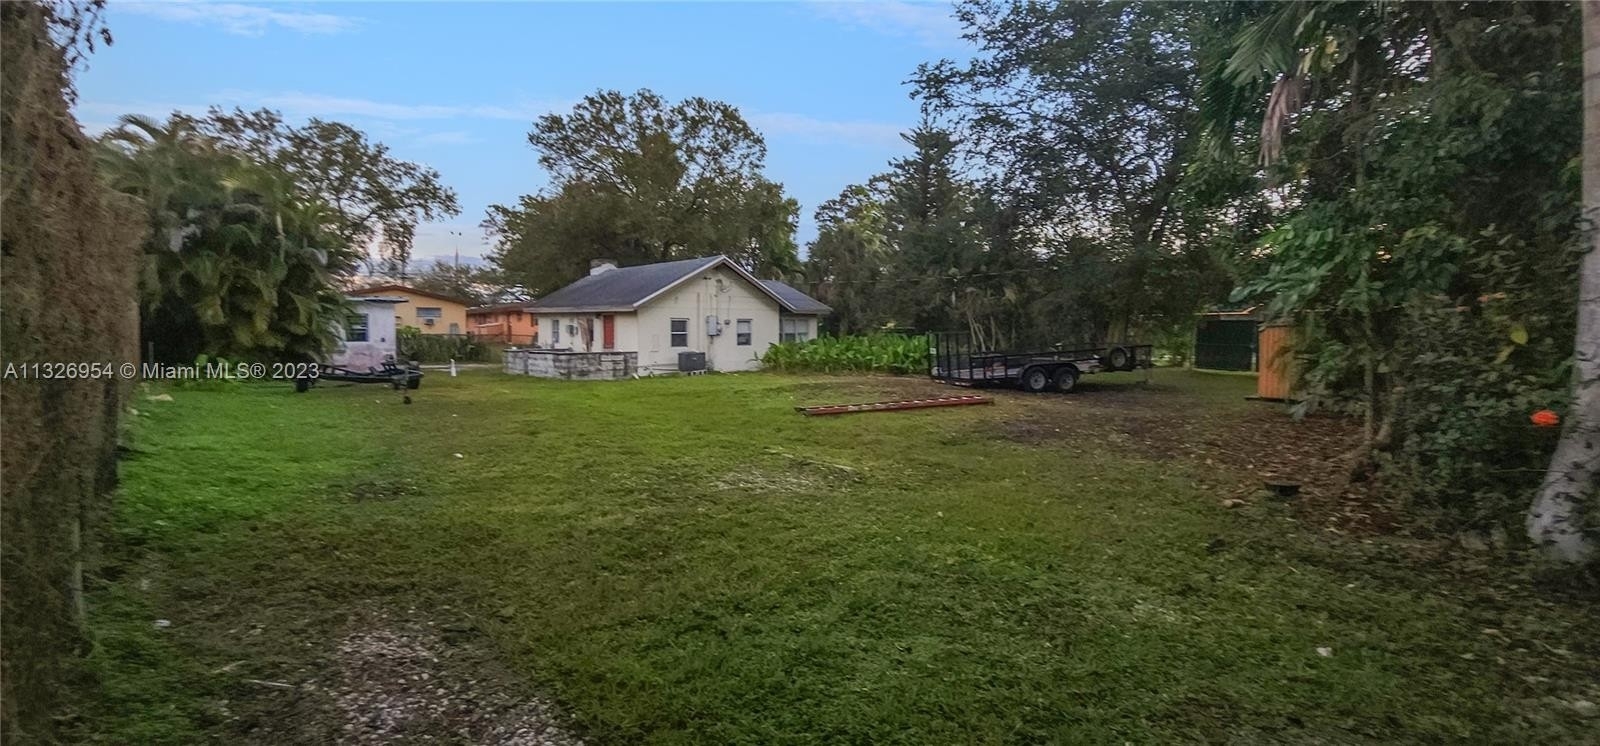 1. Land for Sale at River Oaks, Fort Lauderdale, FL 33315